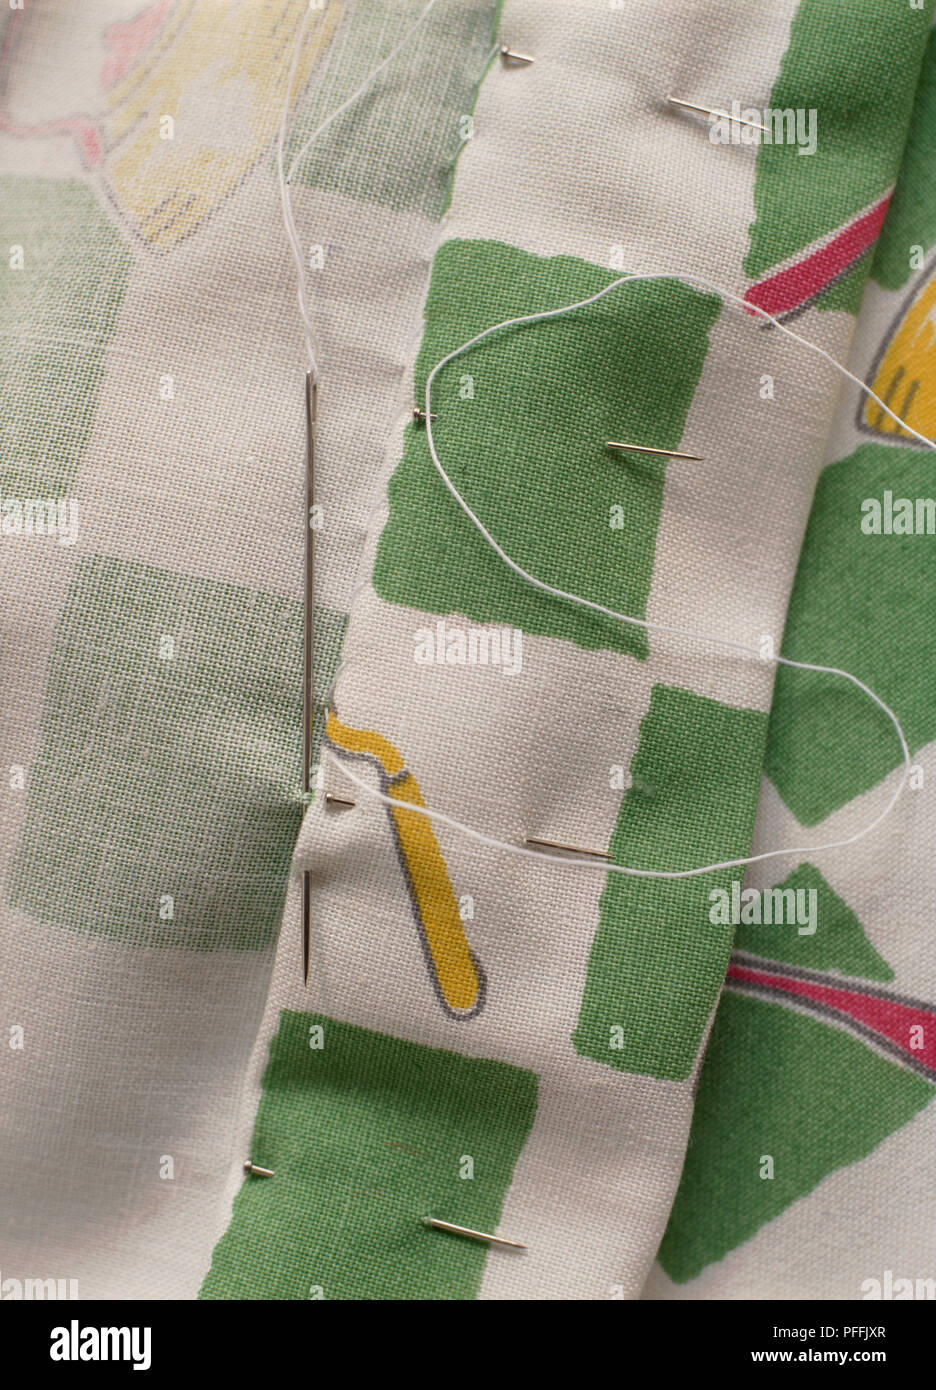 La cucitura del lembo di verde e tende bianche, ago con filo bianco con cuciture, perni orlo di tenuta in posizione. Foto Stock